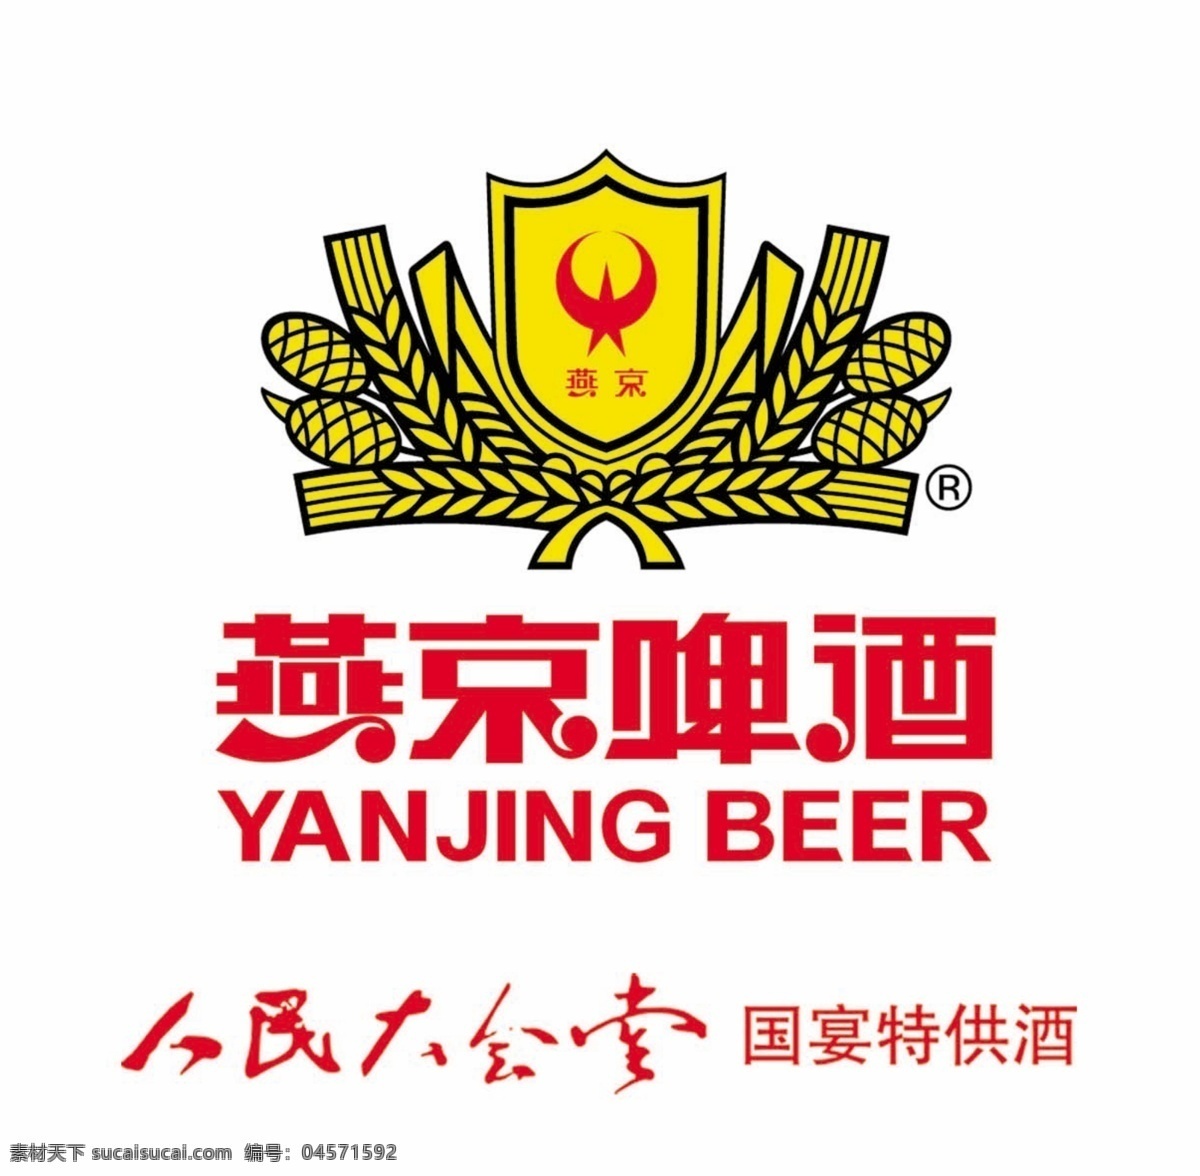 广告设计模板 国内广告设计 燕京啤酒 logo 源文件库 模板下载 国宴特供 psd源文件 logo设计